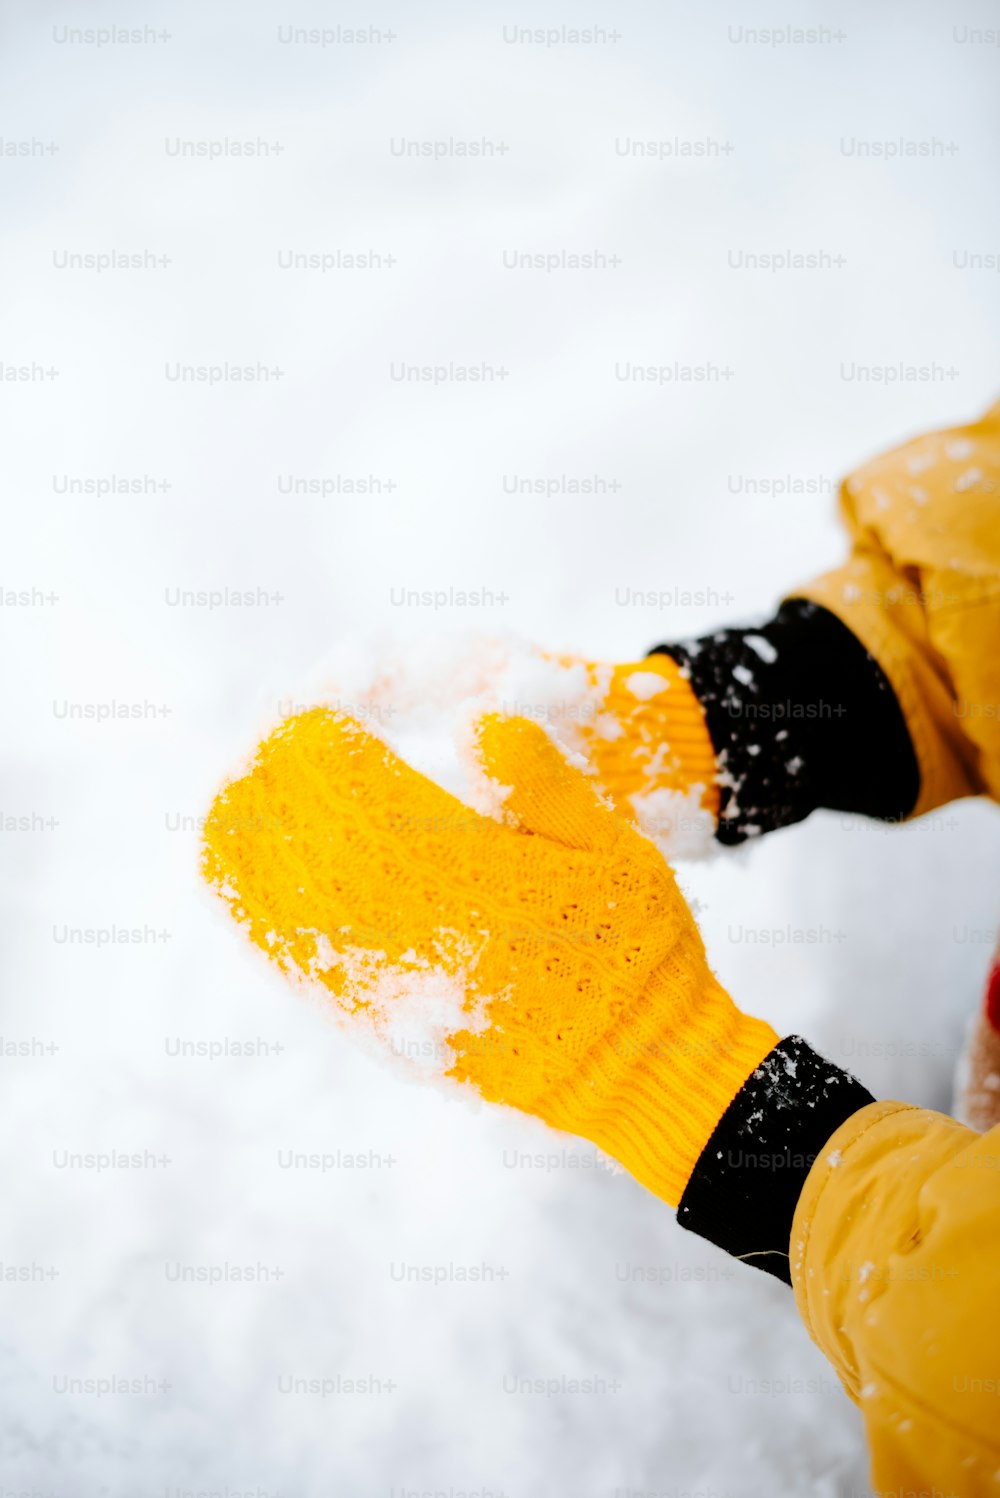 Una persona che indossa guanti gialli in piedi nella neve